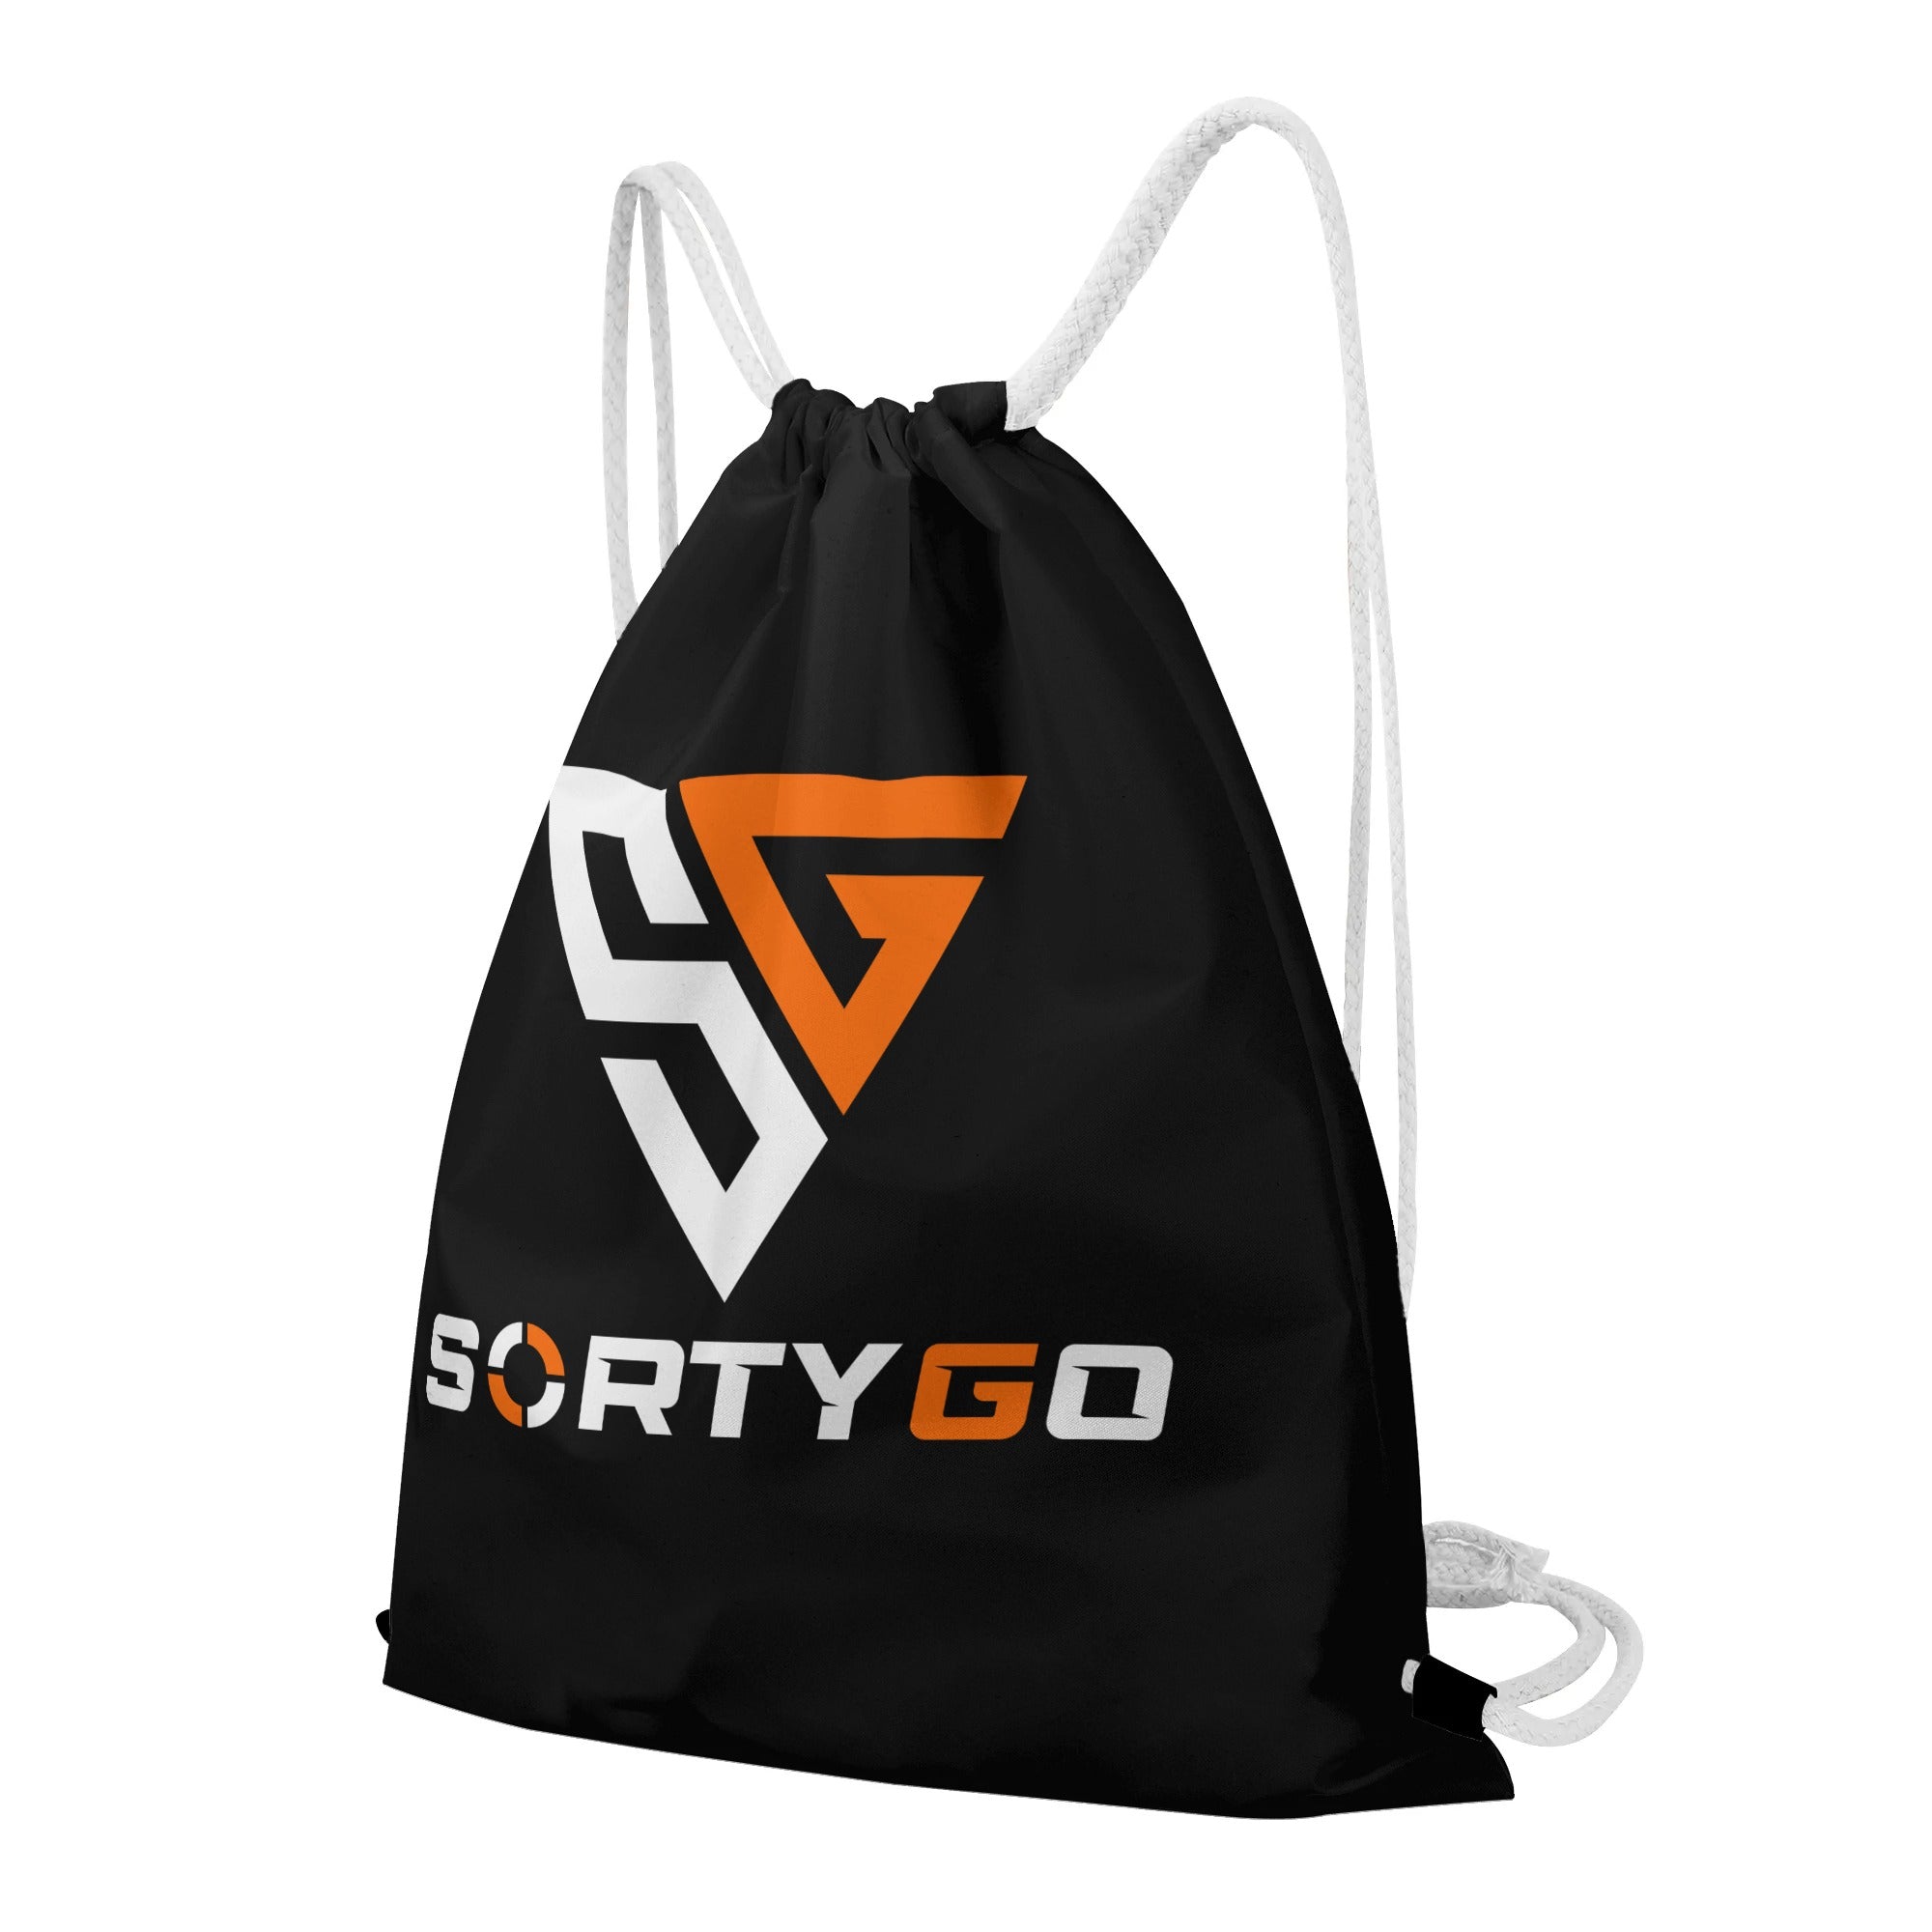 SORTYGO - Graffiti Drawstring Bag in